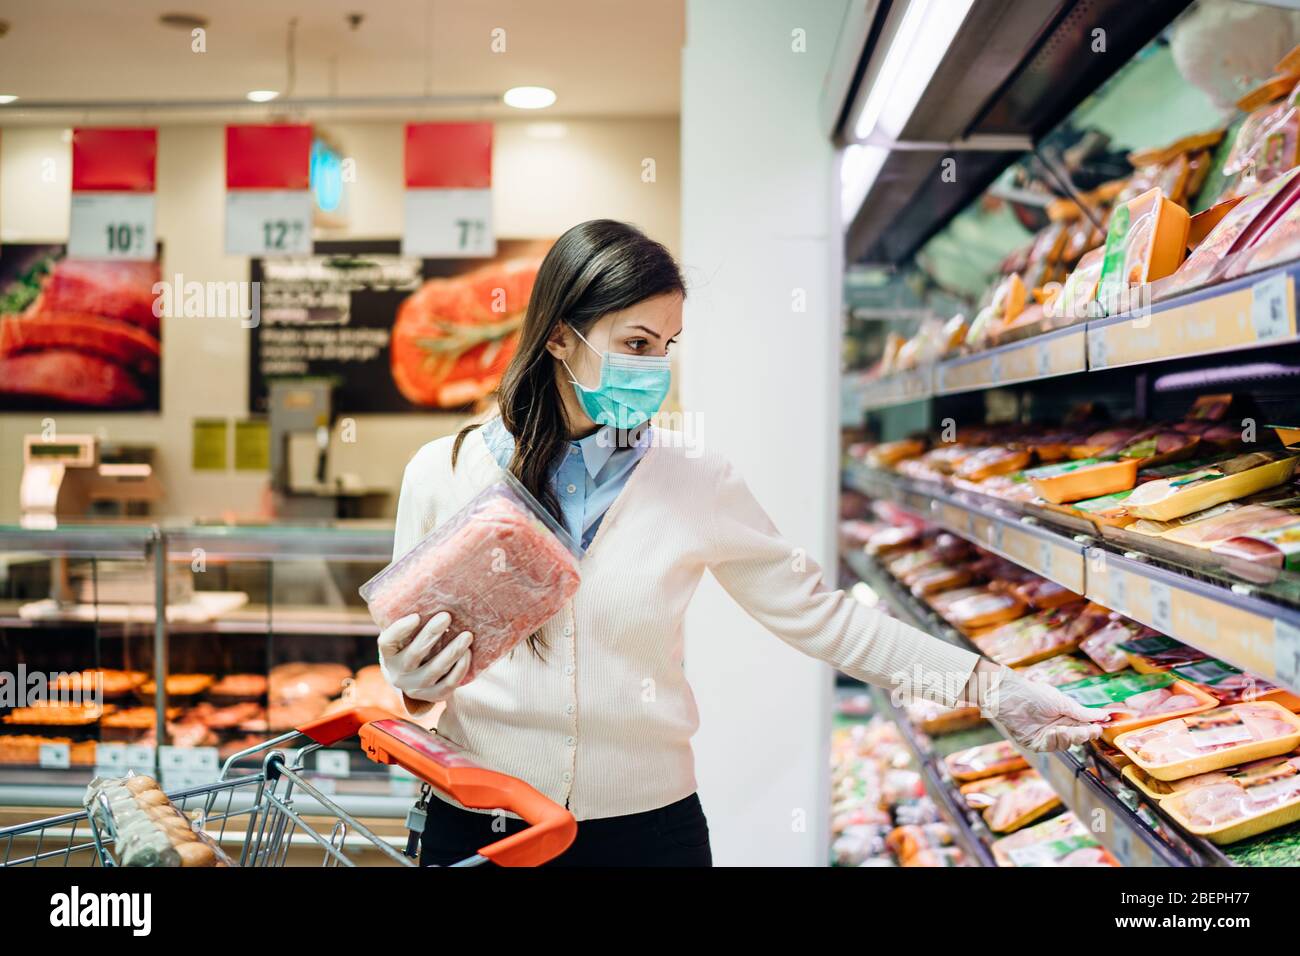 Acheteurs avec masque acheter en toute sécurité pour les produits alimentaires en raison de la pandémie de coronavirus dans une épicerie.COVID-19 achats de viande et de produits animaux.quarantaine p Banque D'Images